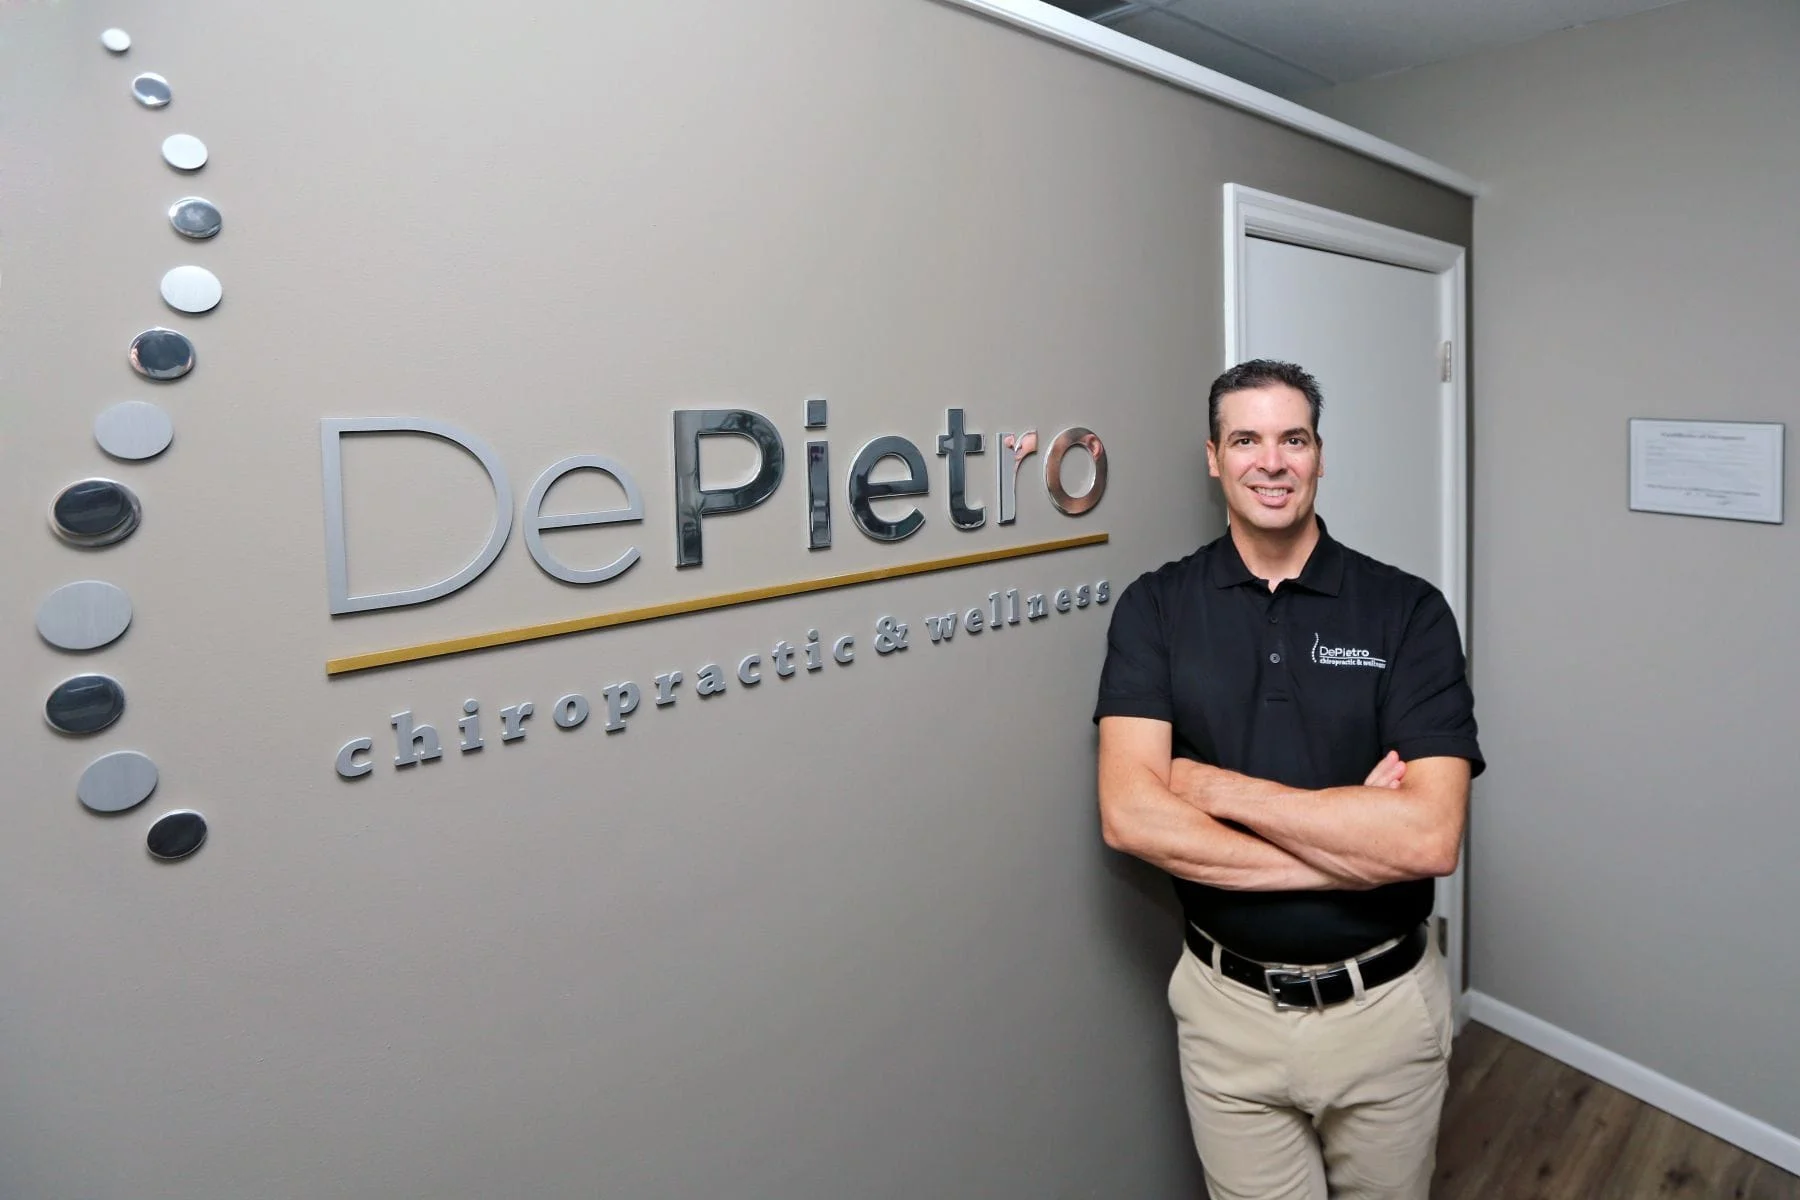 DePietro Chiropractic & Wellness Doctor